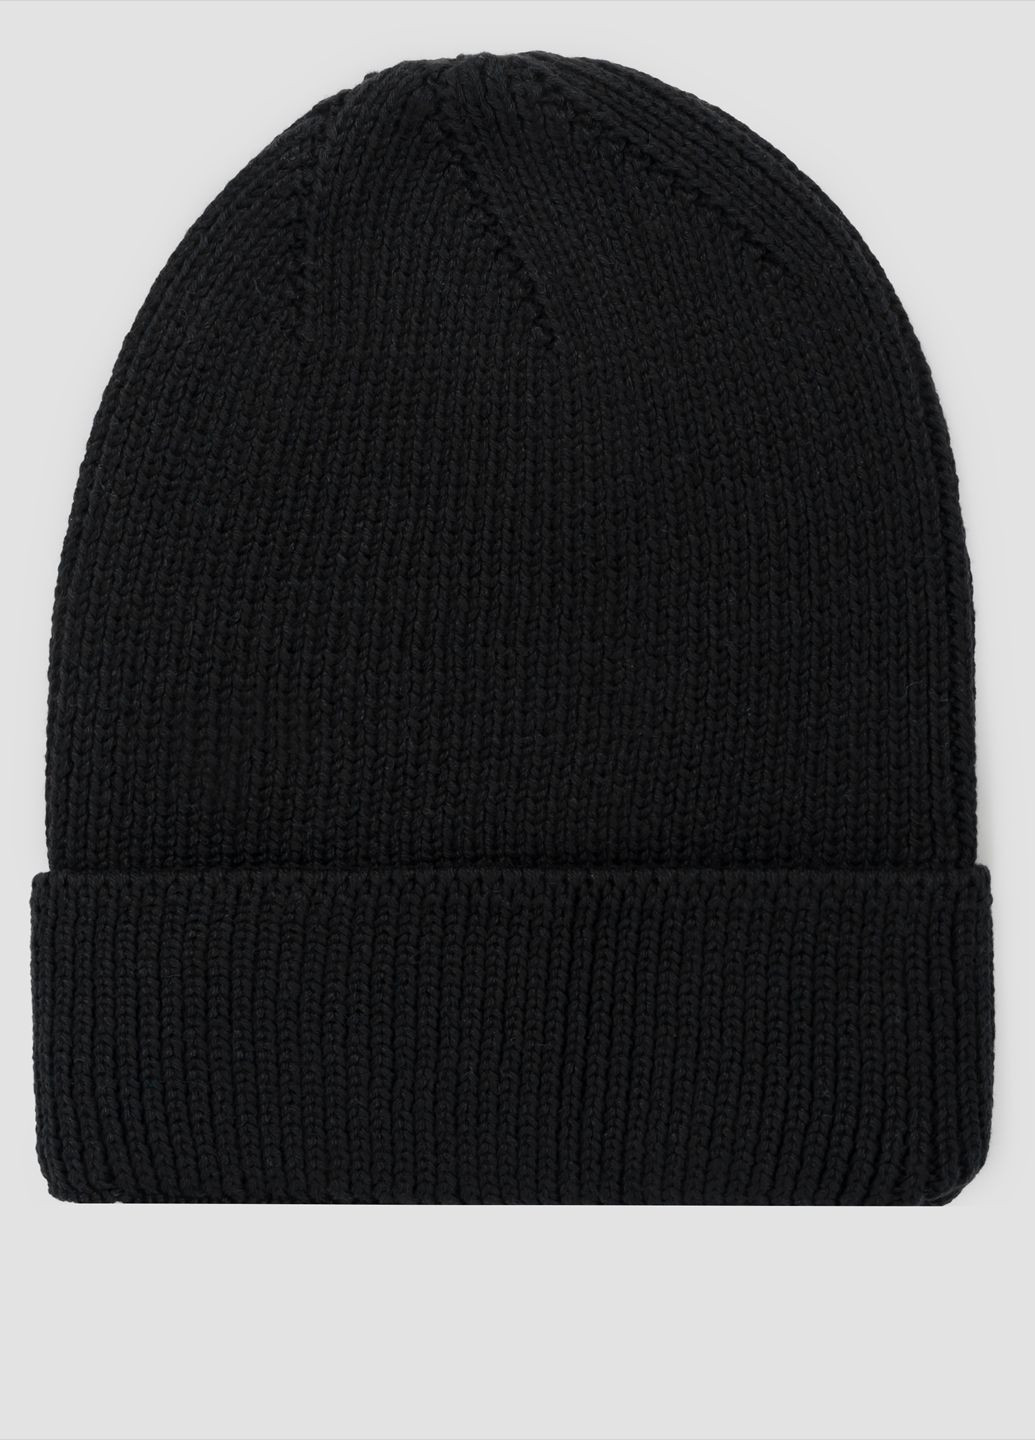 Шапка мужская черная Arber шапка w3 rib1*1 (285787738)